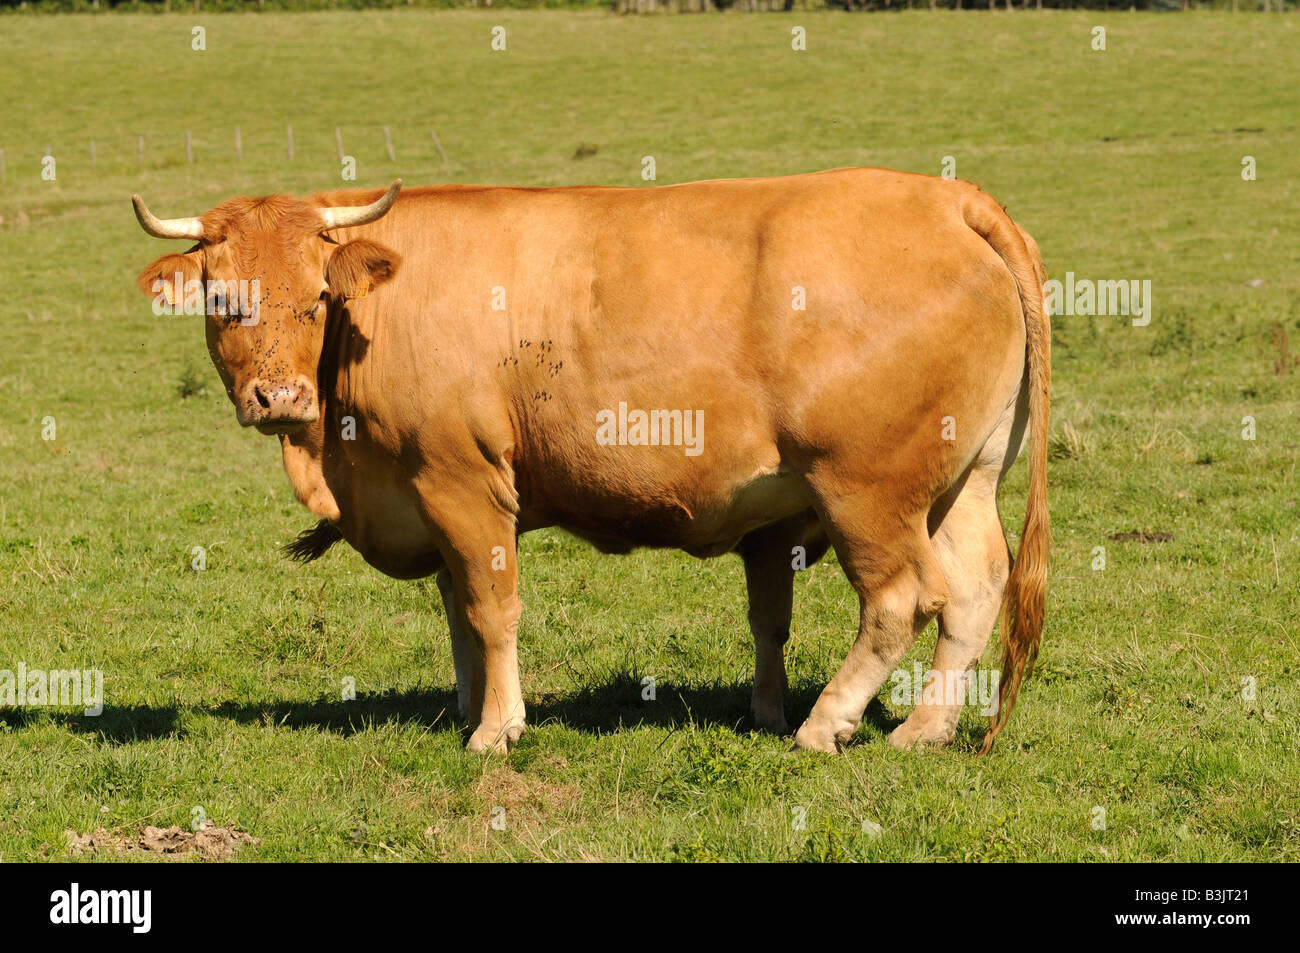 Eine Herde Kühe in Correze, zentralen Region von Frankreich berühmt für seine Kühe Fleischqualität. Diese Kühe werden als Limousinen bezeichnet. Stockfoto